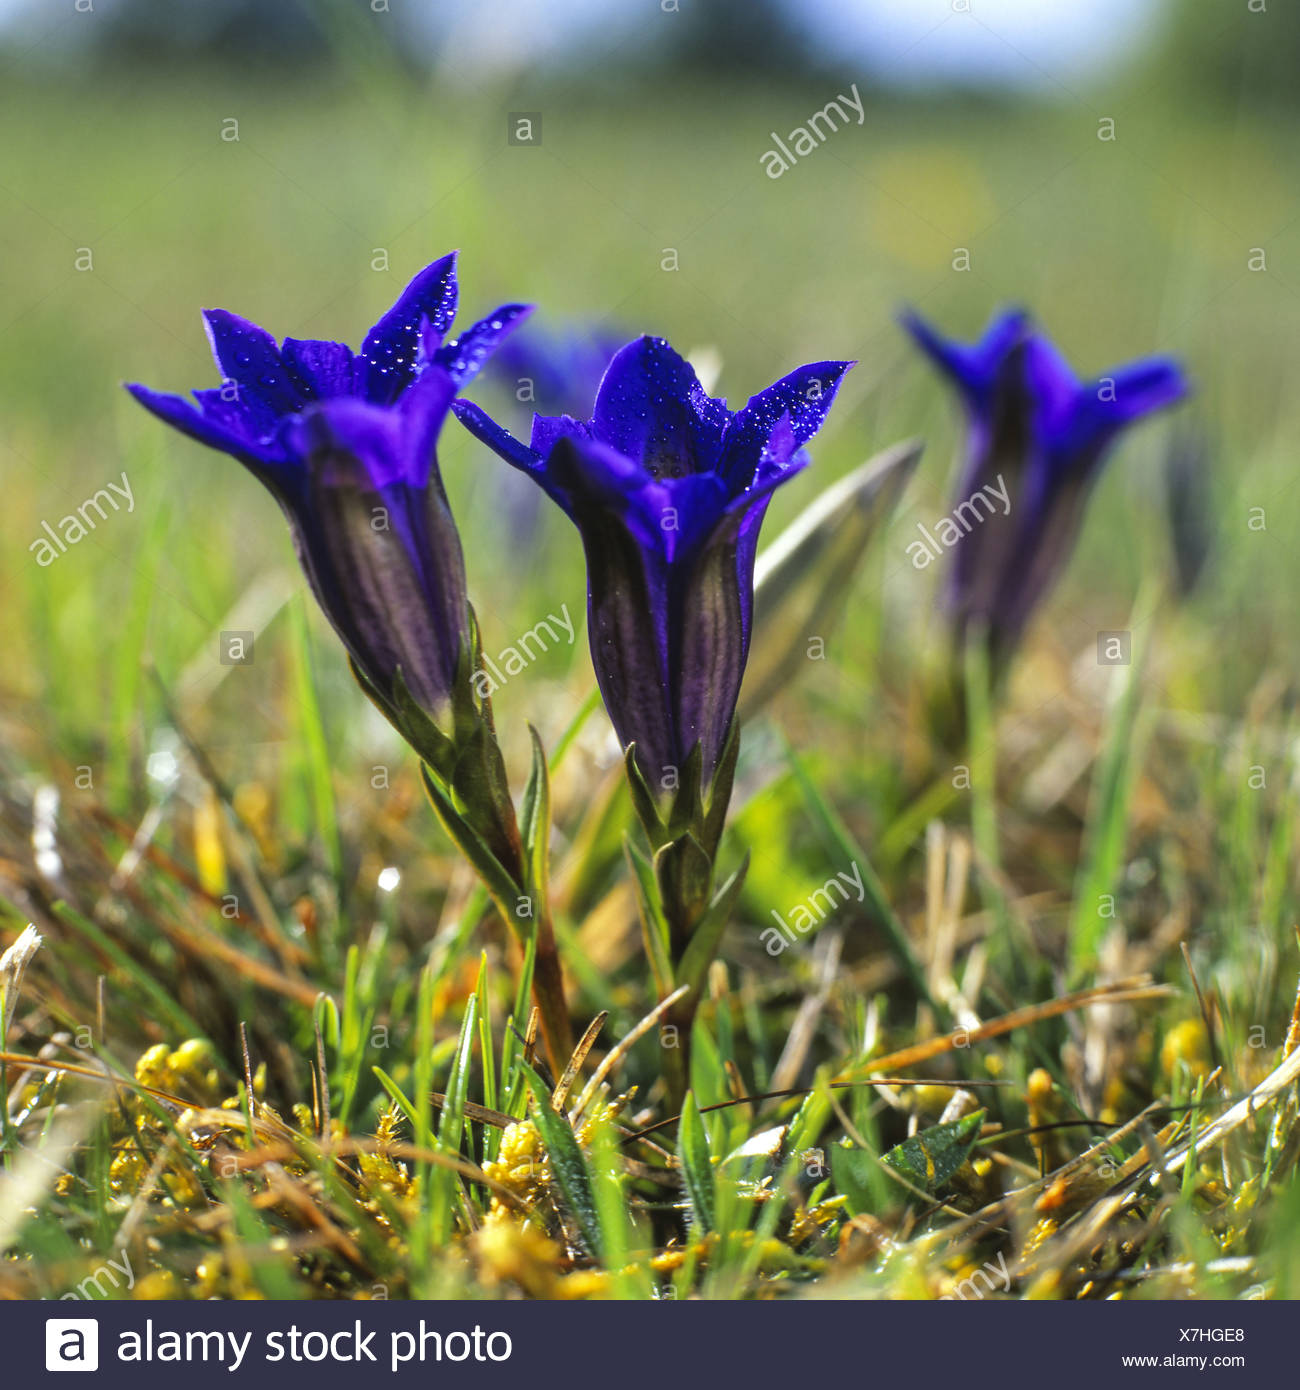 Stengelloser Enzian, blauer Enzian auf einer Wiese Stock Photo - Alamy